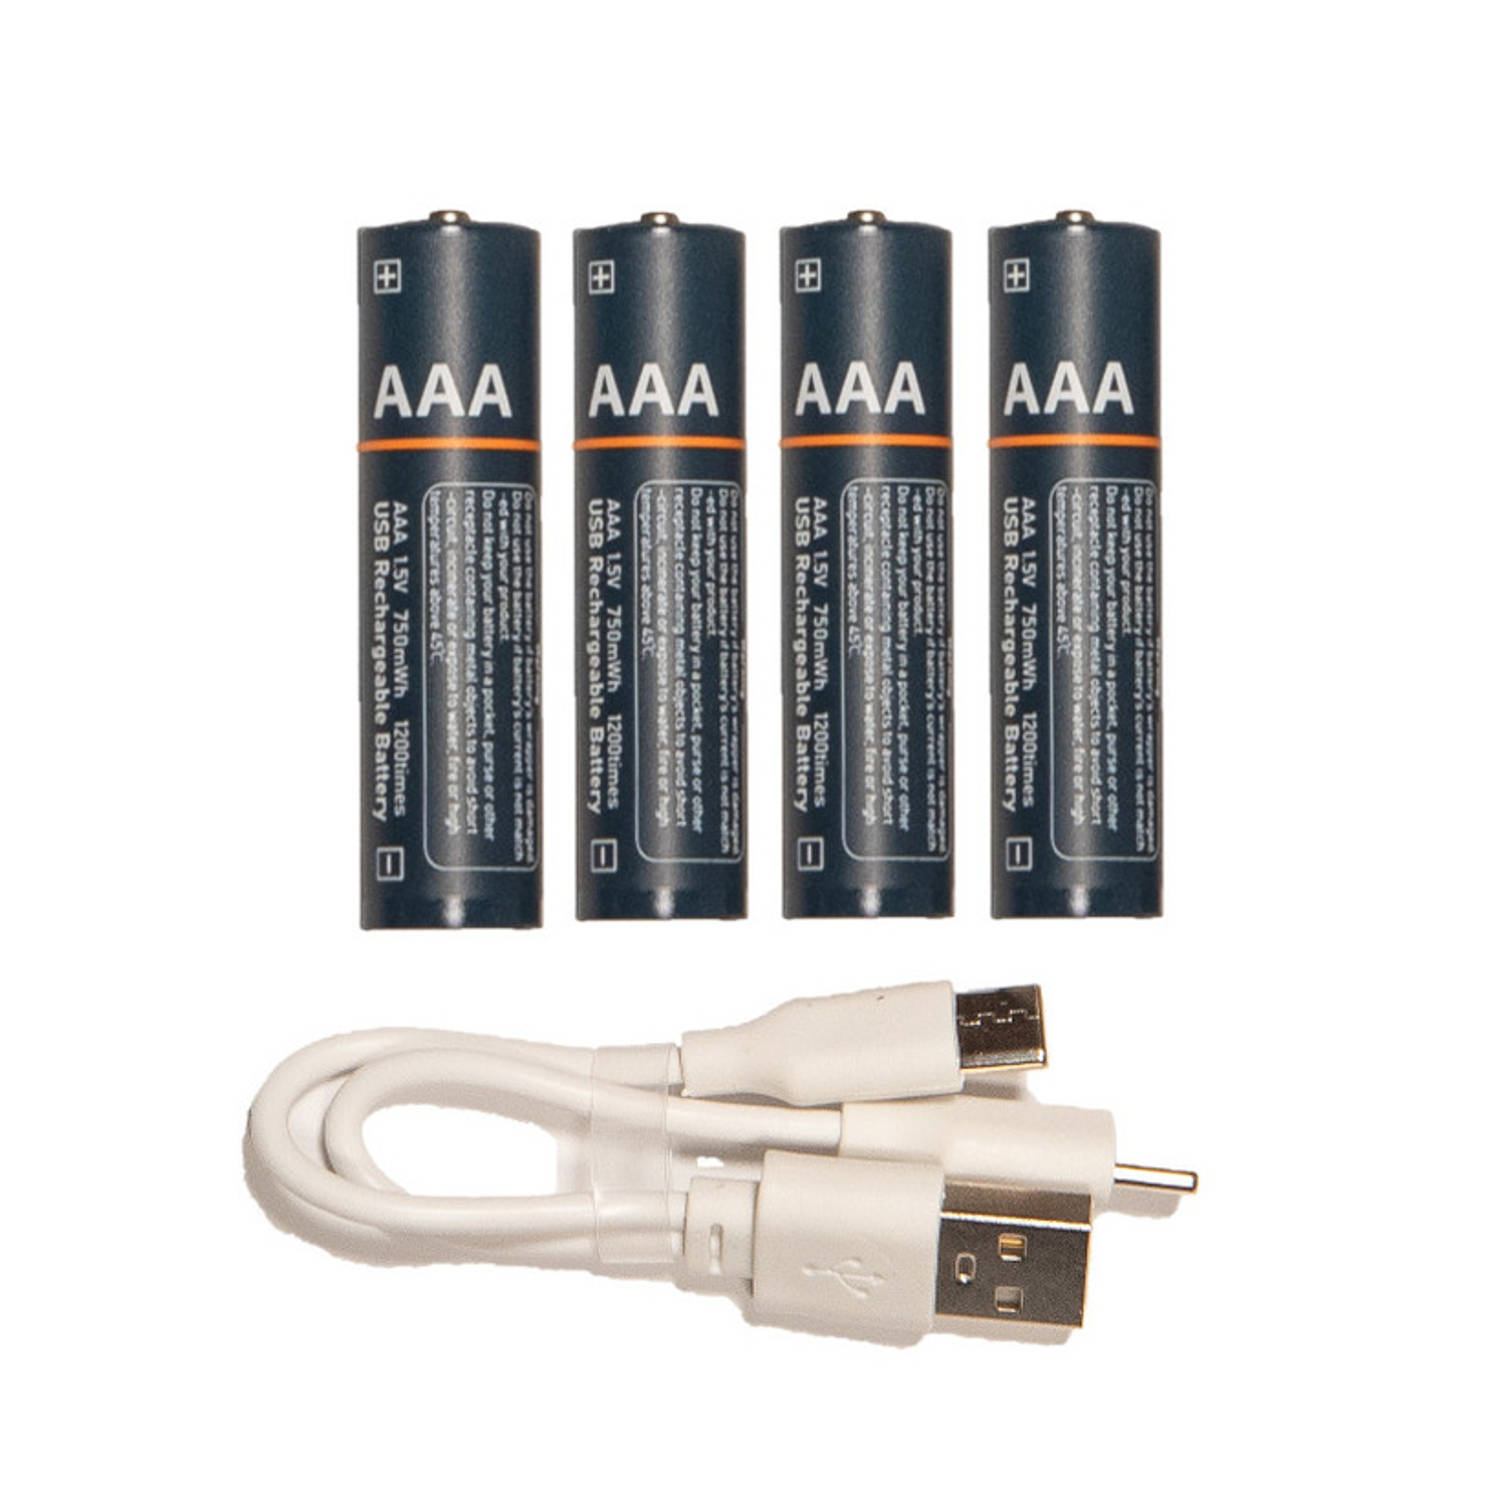 Anna Collection oplAAAdbare batterijen - AAA - 4x stuks - met USB kabel - Penlites AA batterijen